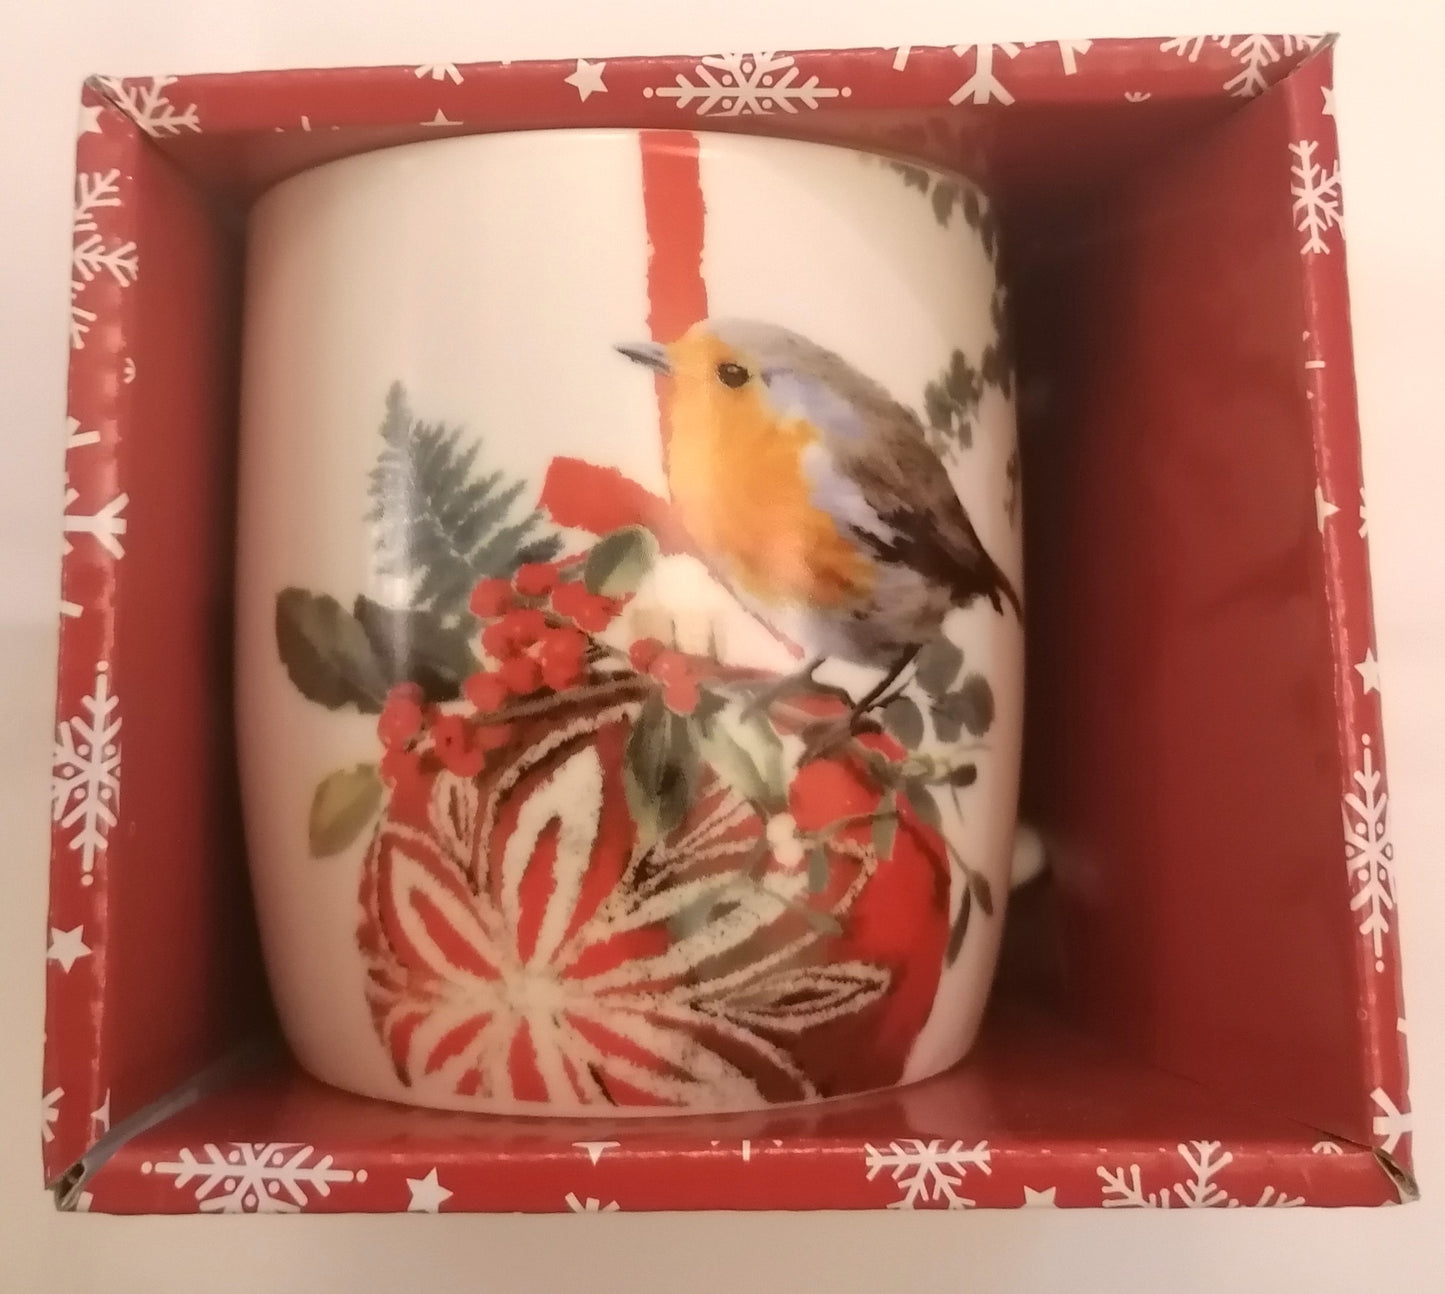 Adult Christmas Mug with hot chocolate